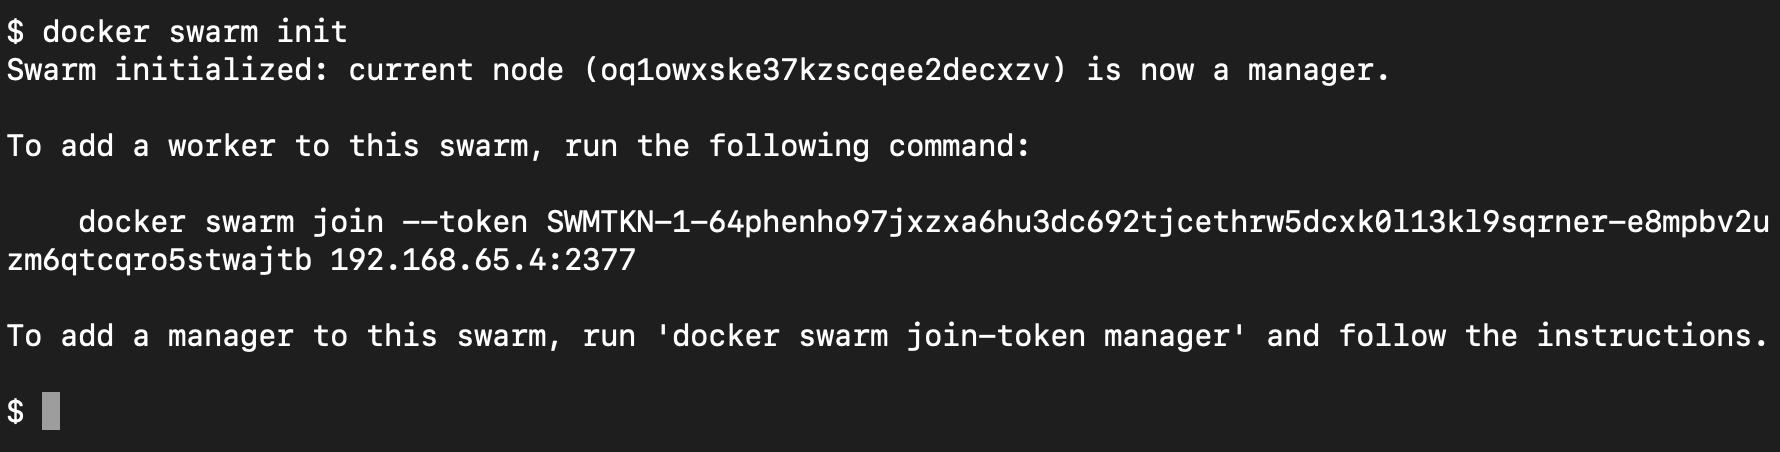 ejemplo-de-comando-docker-swarm-init